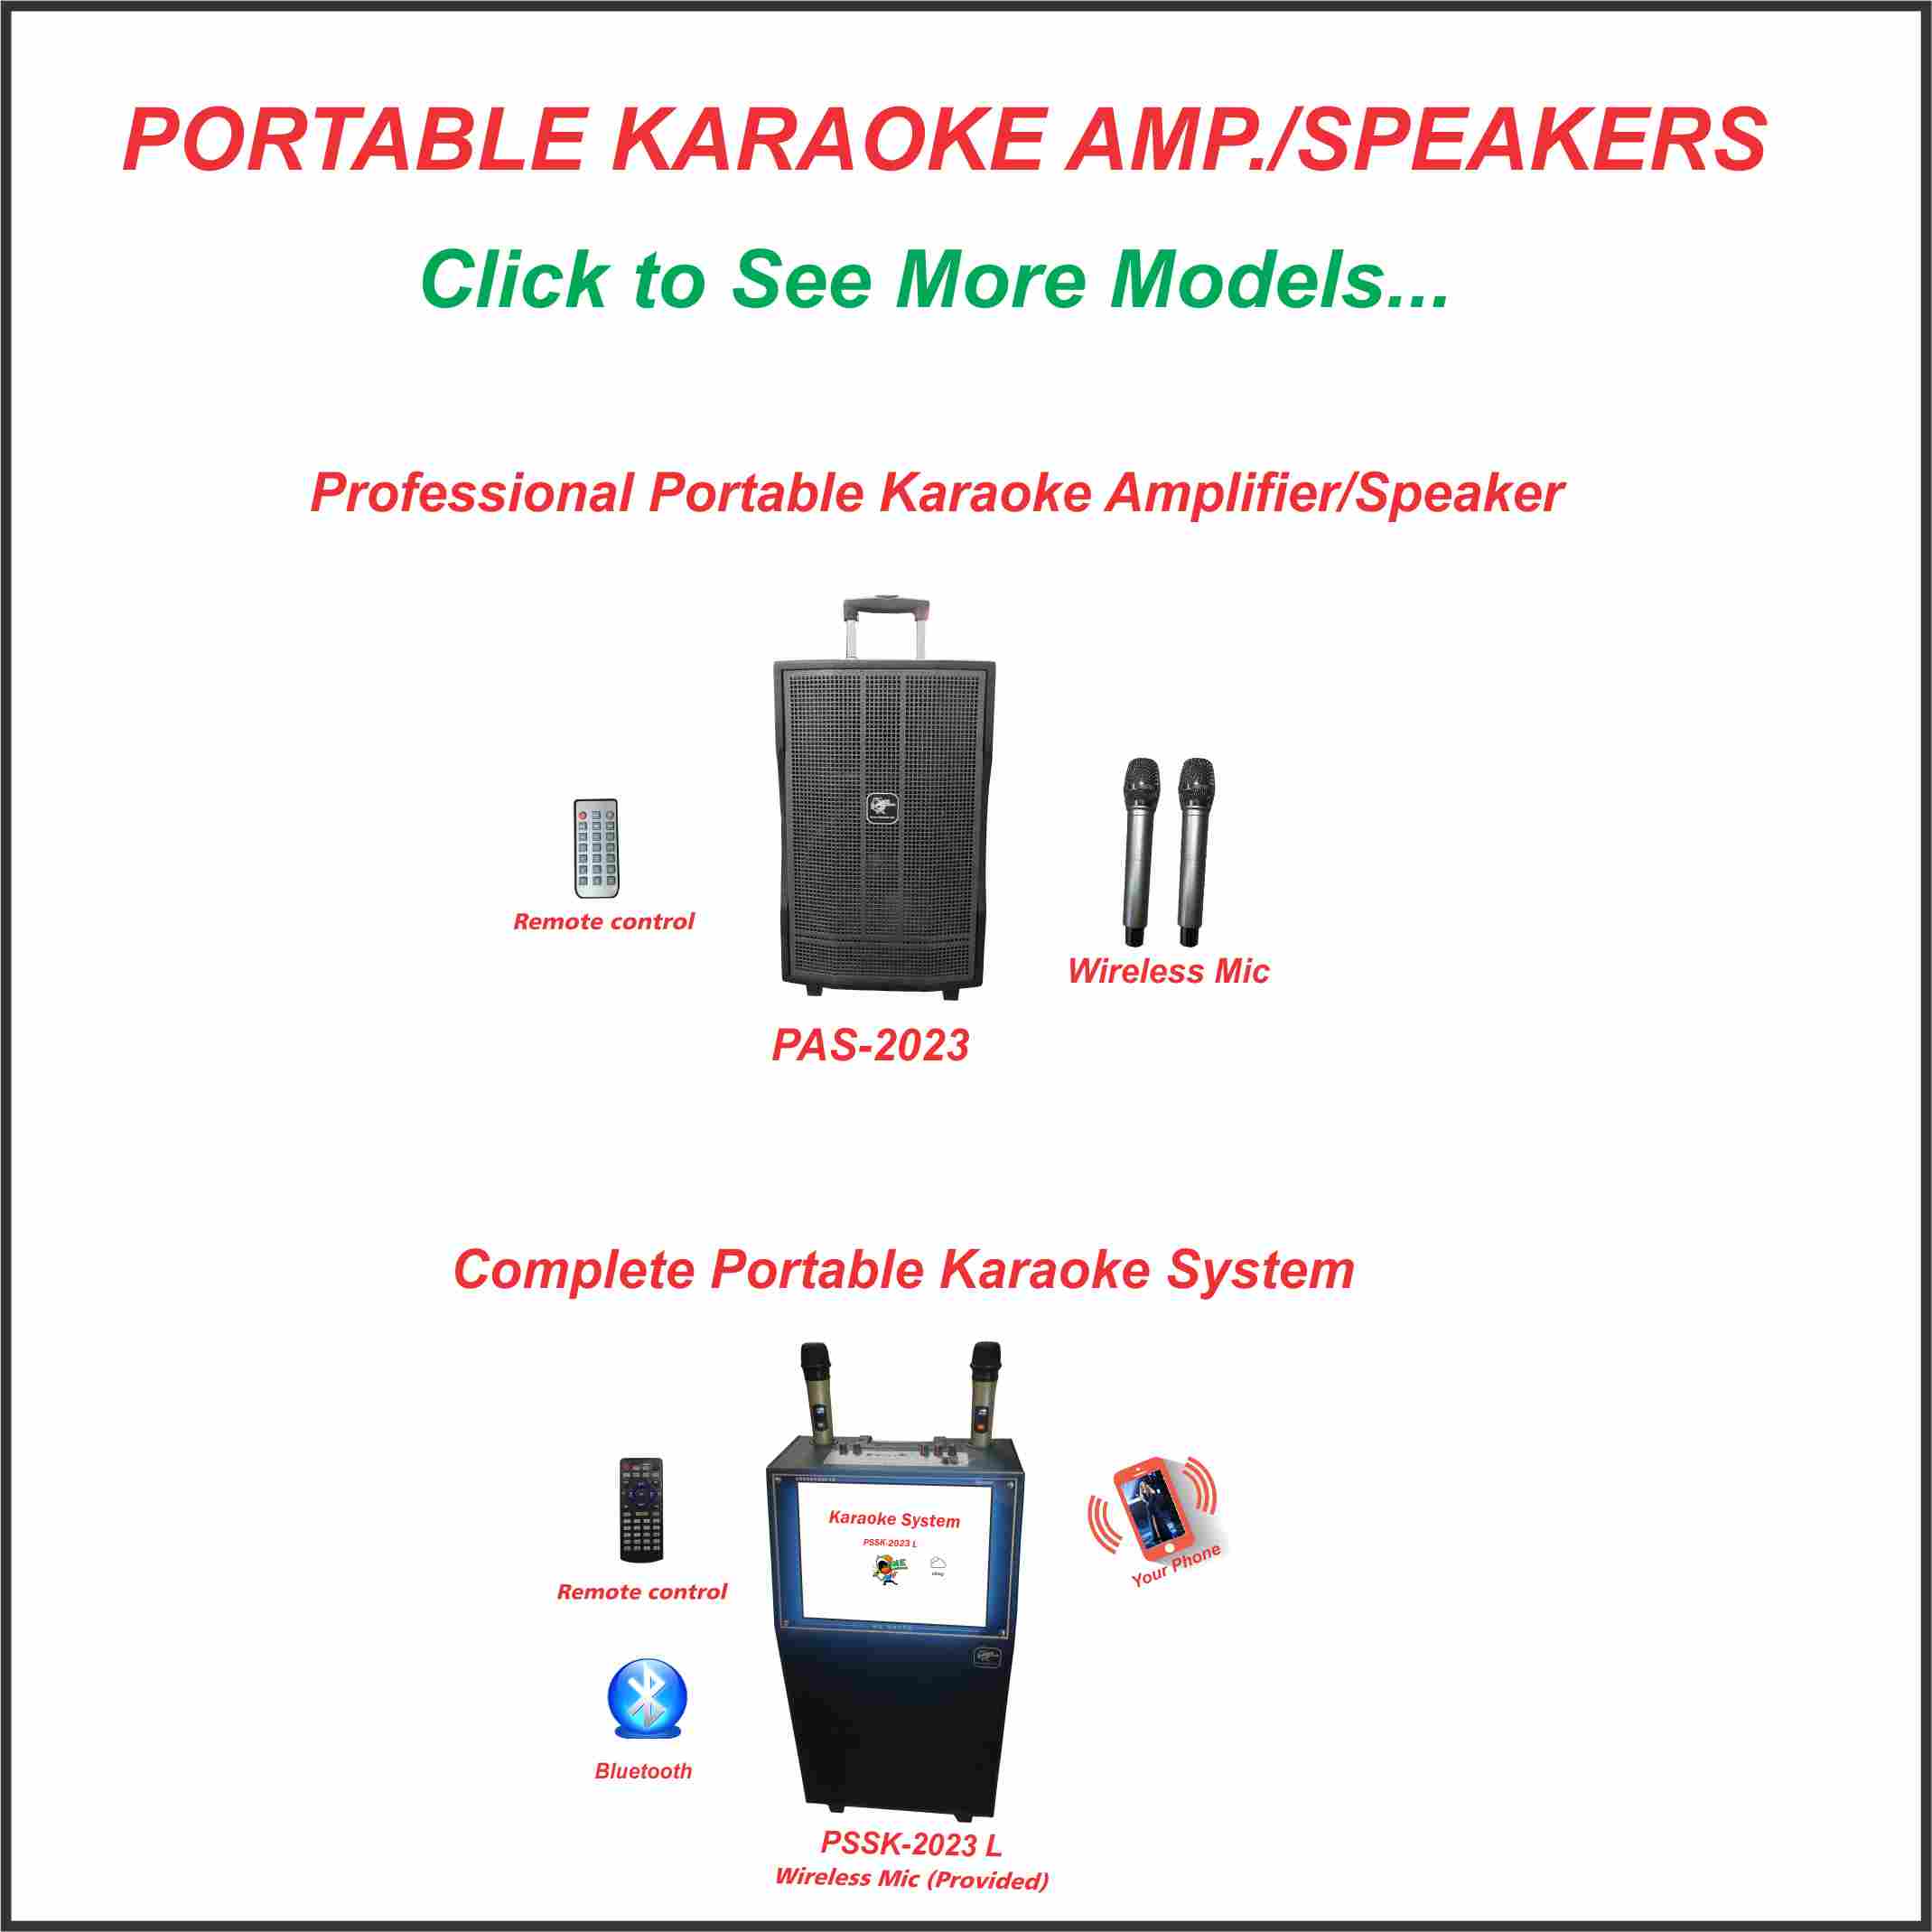 4. Portable Karaoke Amp/Speakers